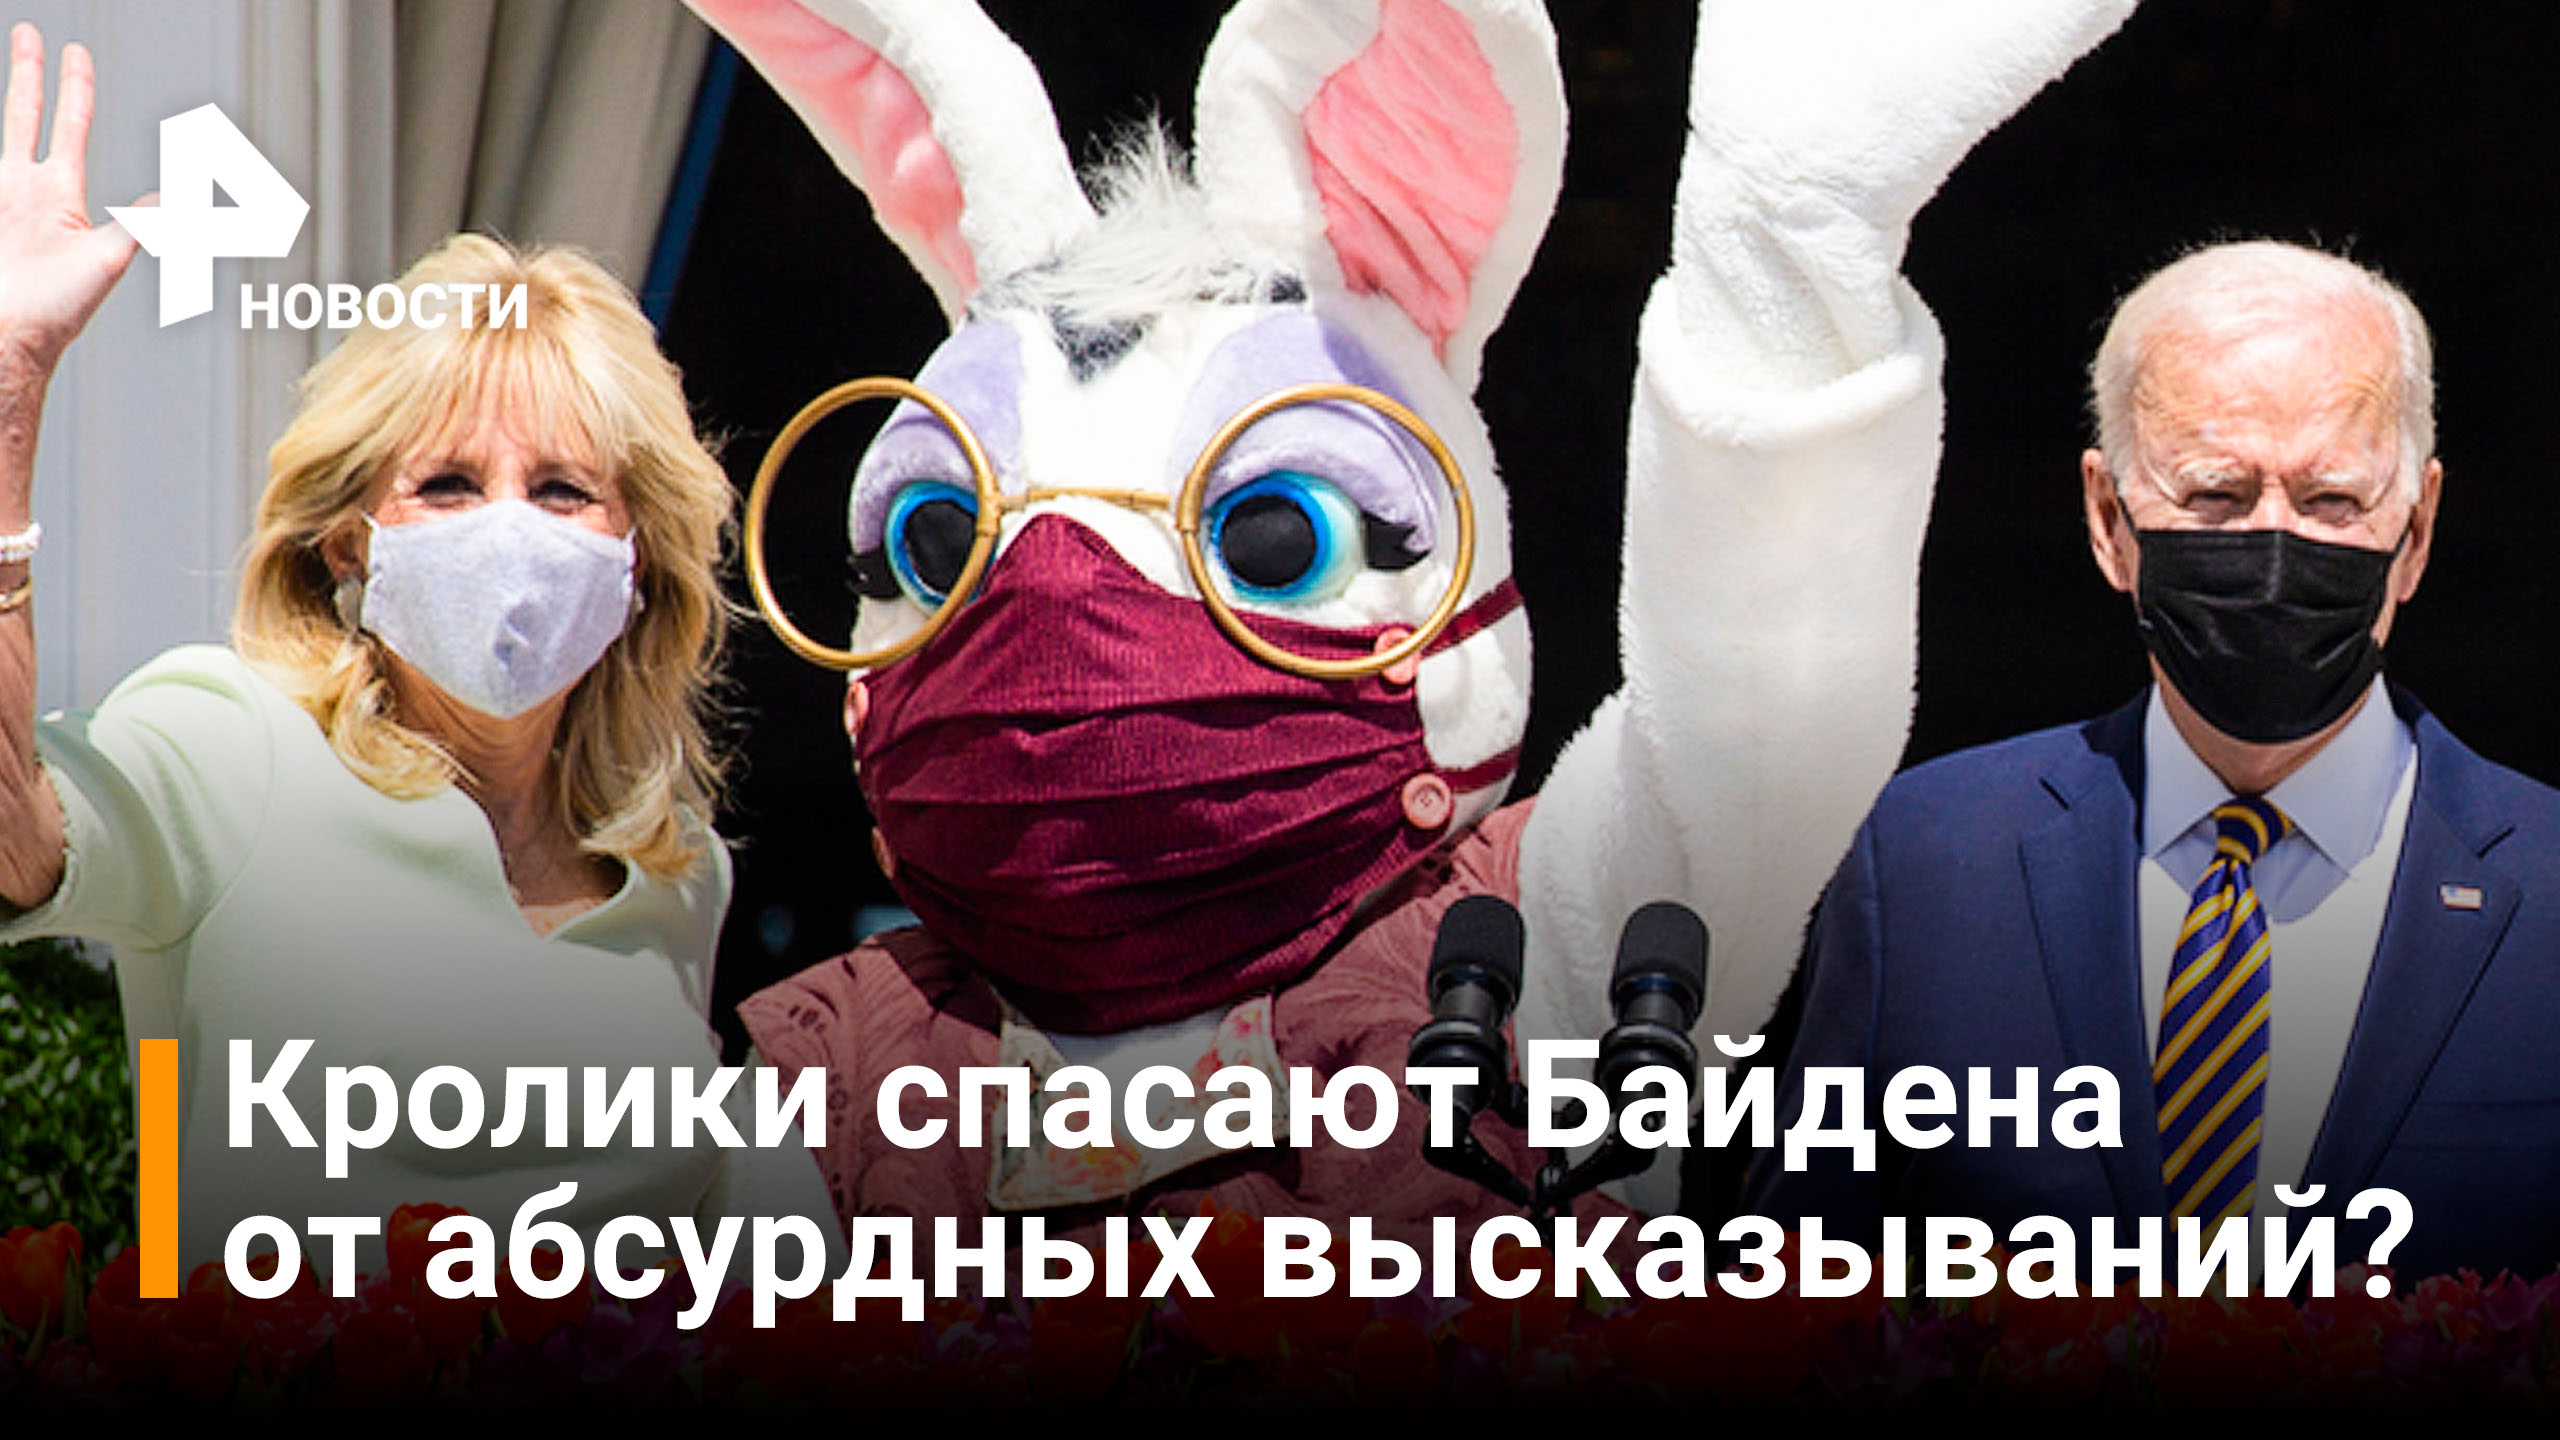 Байдена преследует кролик и не даёт говорить о внешней политики / РЕН Новости